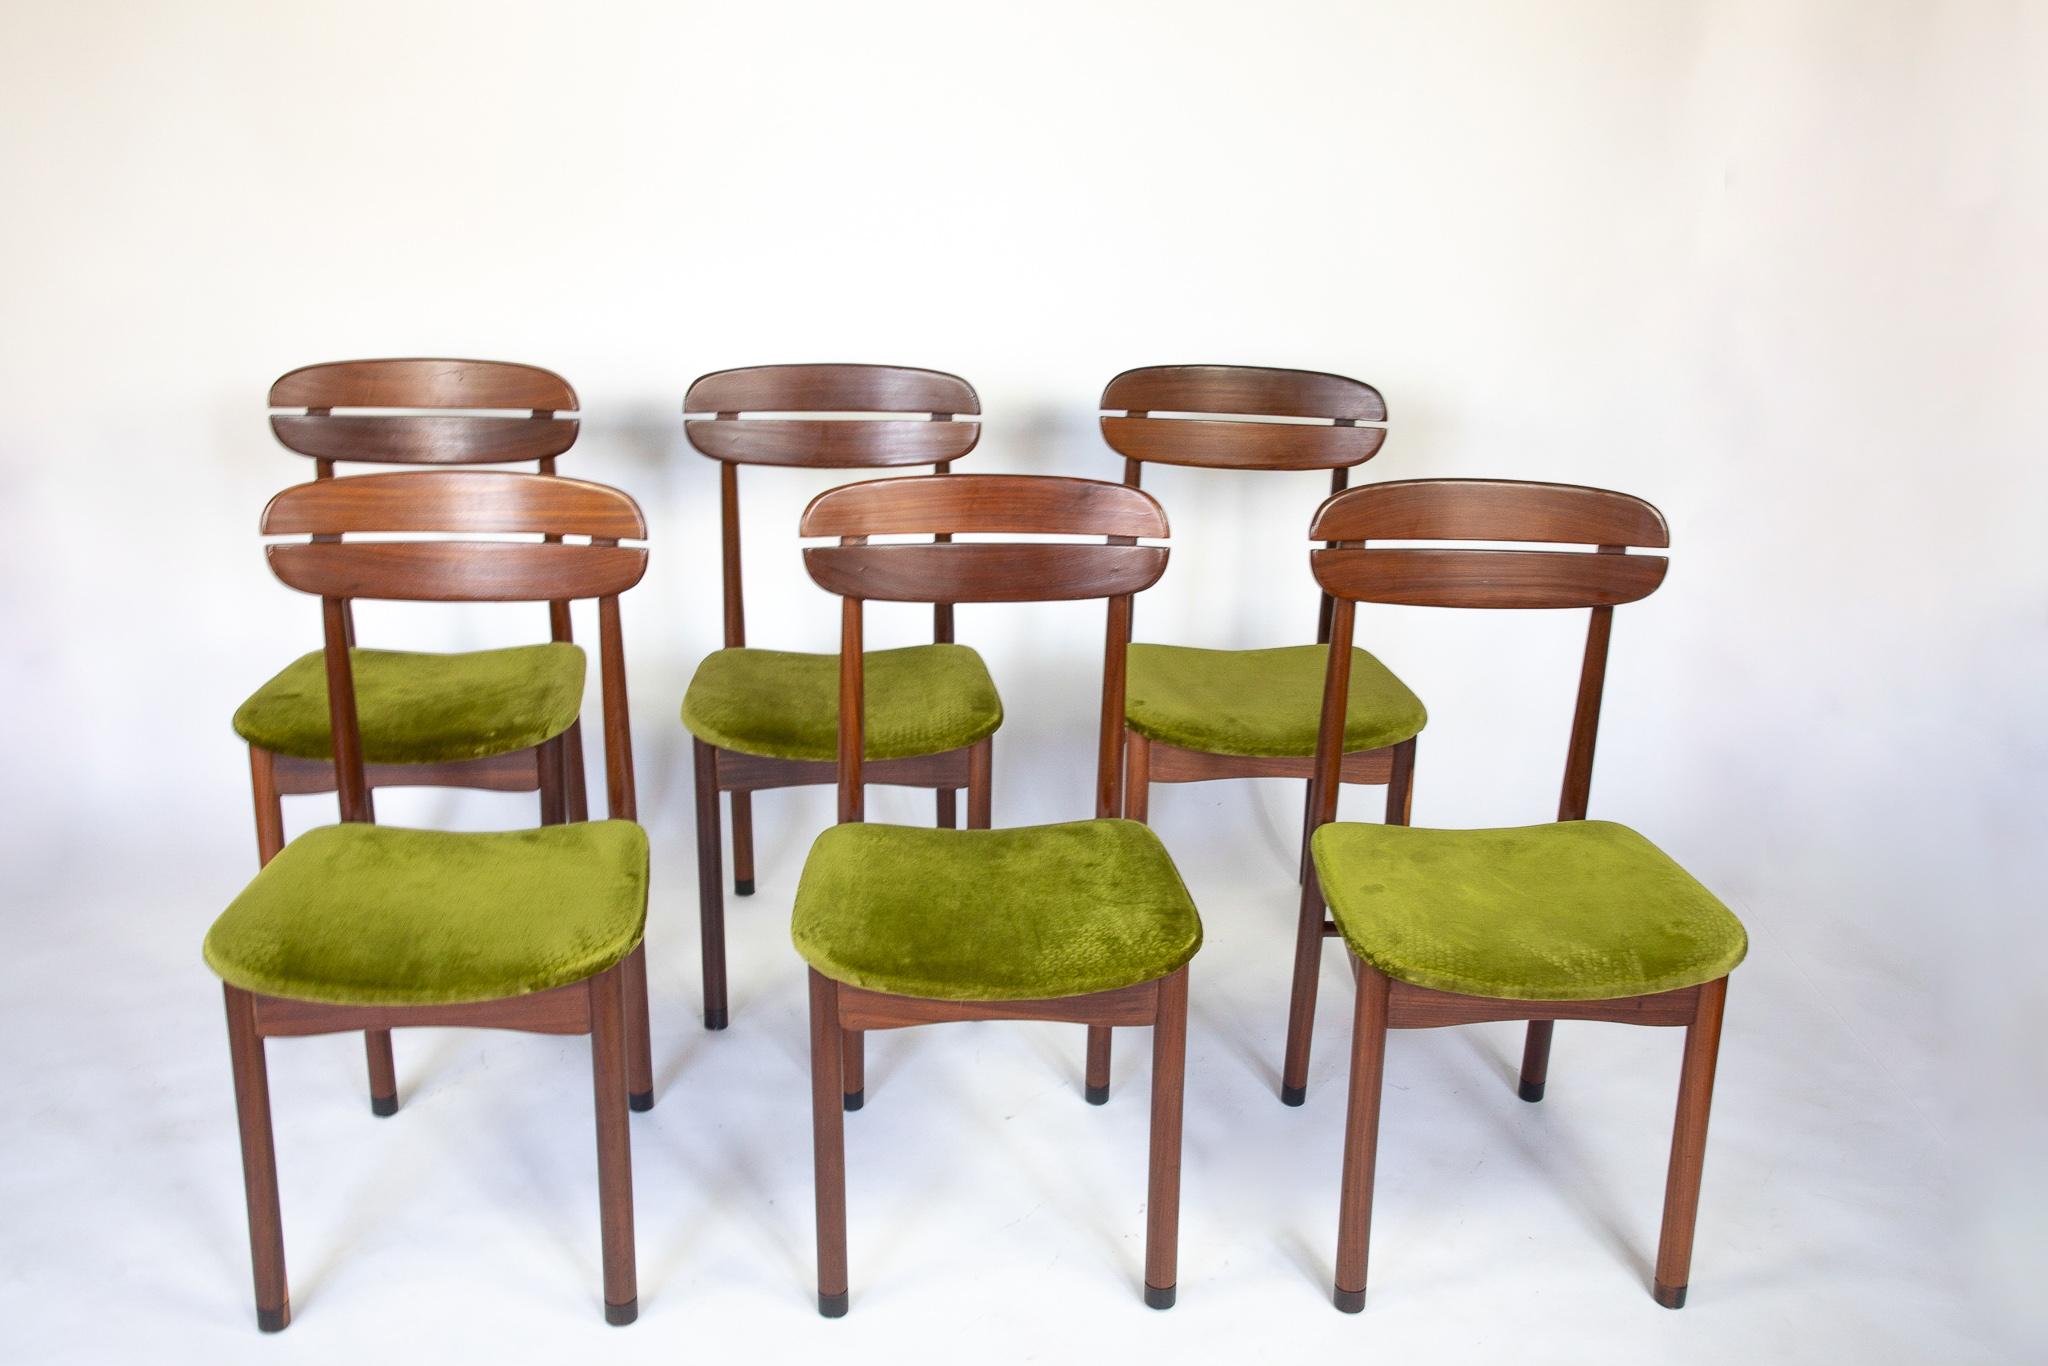 Chaises de salle à manger moderne du milieu du siècle dernier avec revêtement en velours vert, ensemble de 6, années 1950

Cet ensemble de six chaises de salle à manger modernes du milieu du siècle dernier, fabriquées en teck, ajoute une élégance